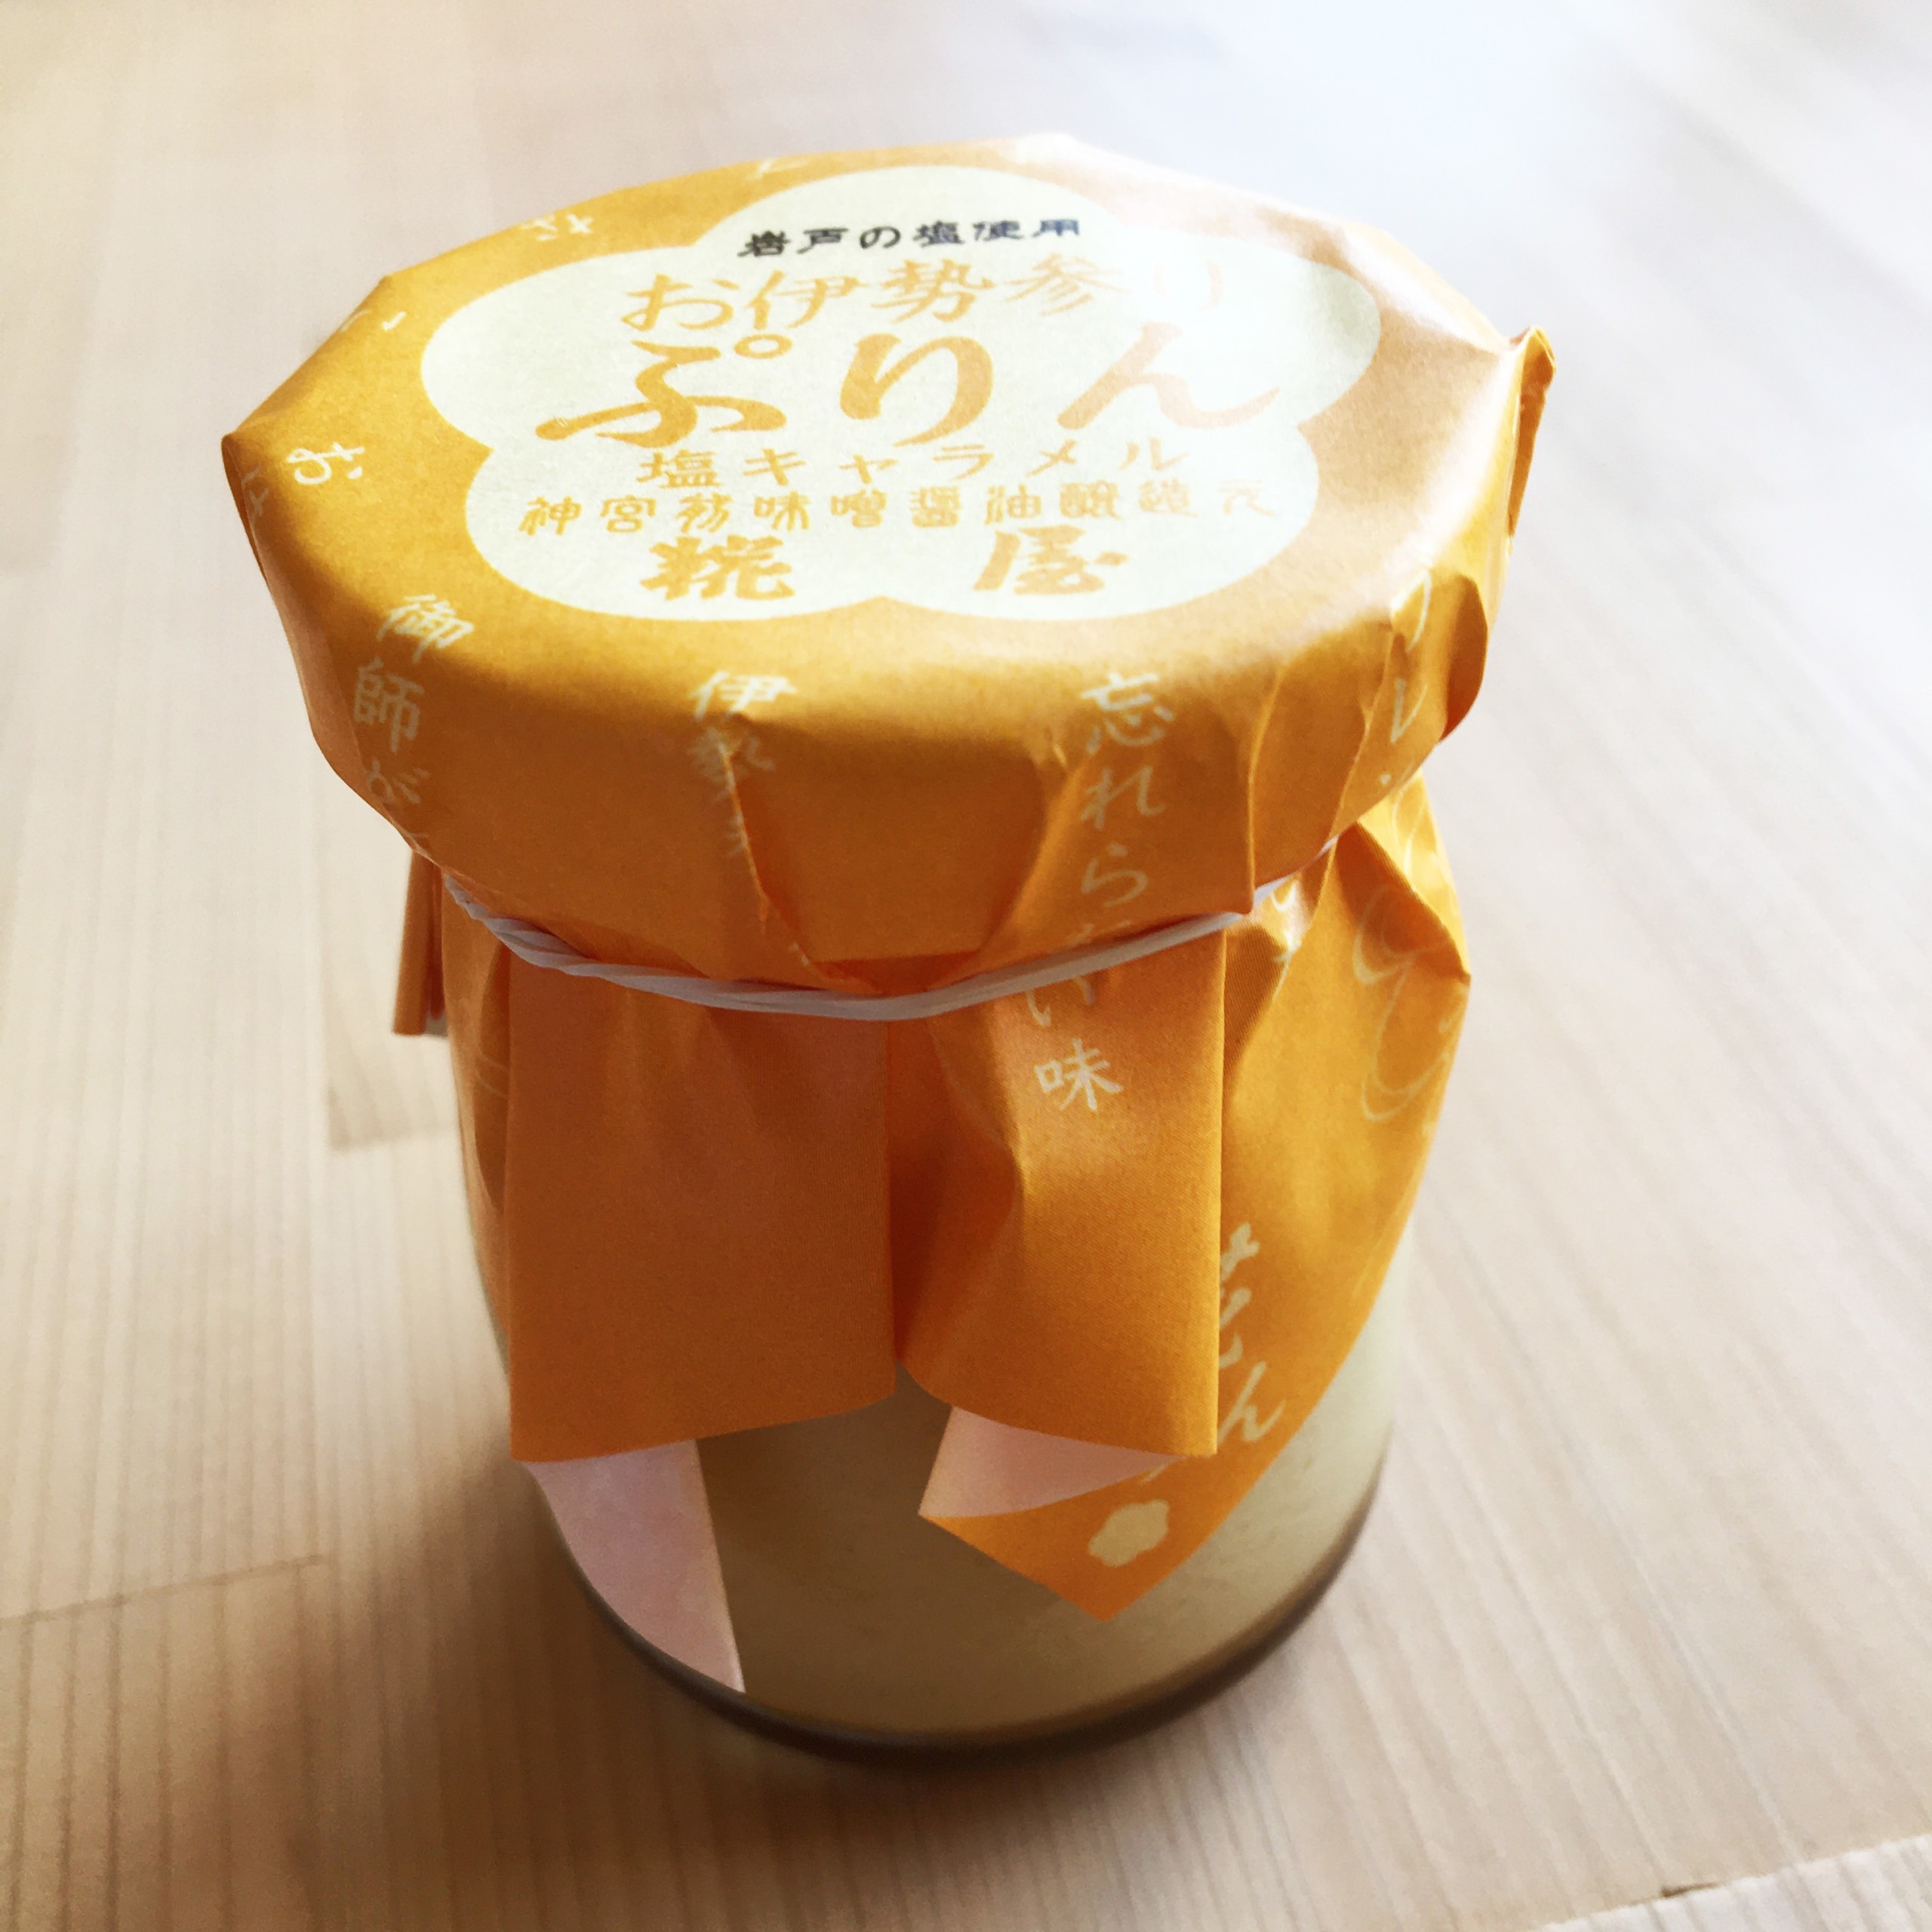 10月10日は『1010(トート)の日』！！
姫路発のスペシャルティコーヒー専門店
『tote coffee(トートコーヒー)』がイベントを実施！